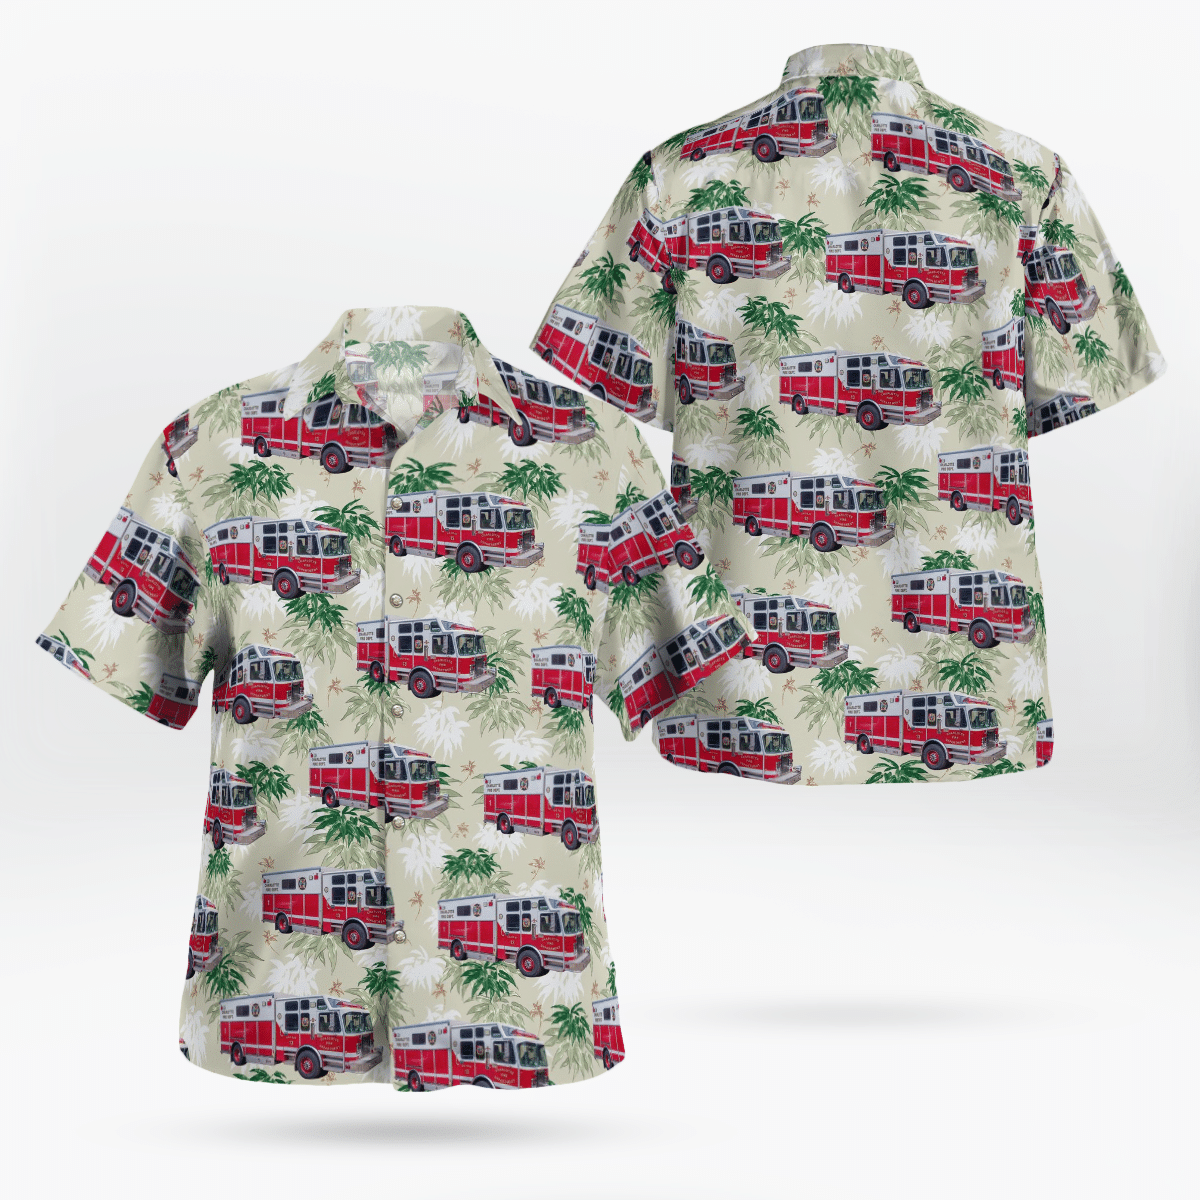 You won't regret buying these Aloha Shirt 83